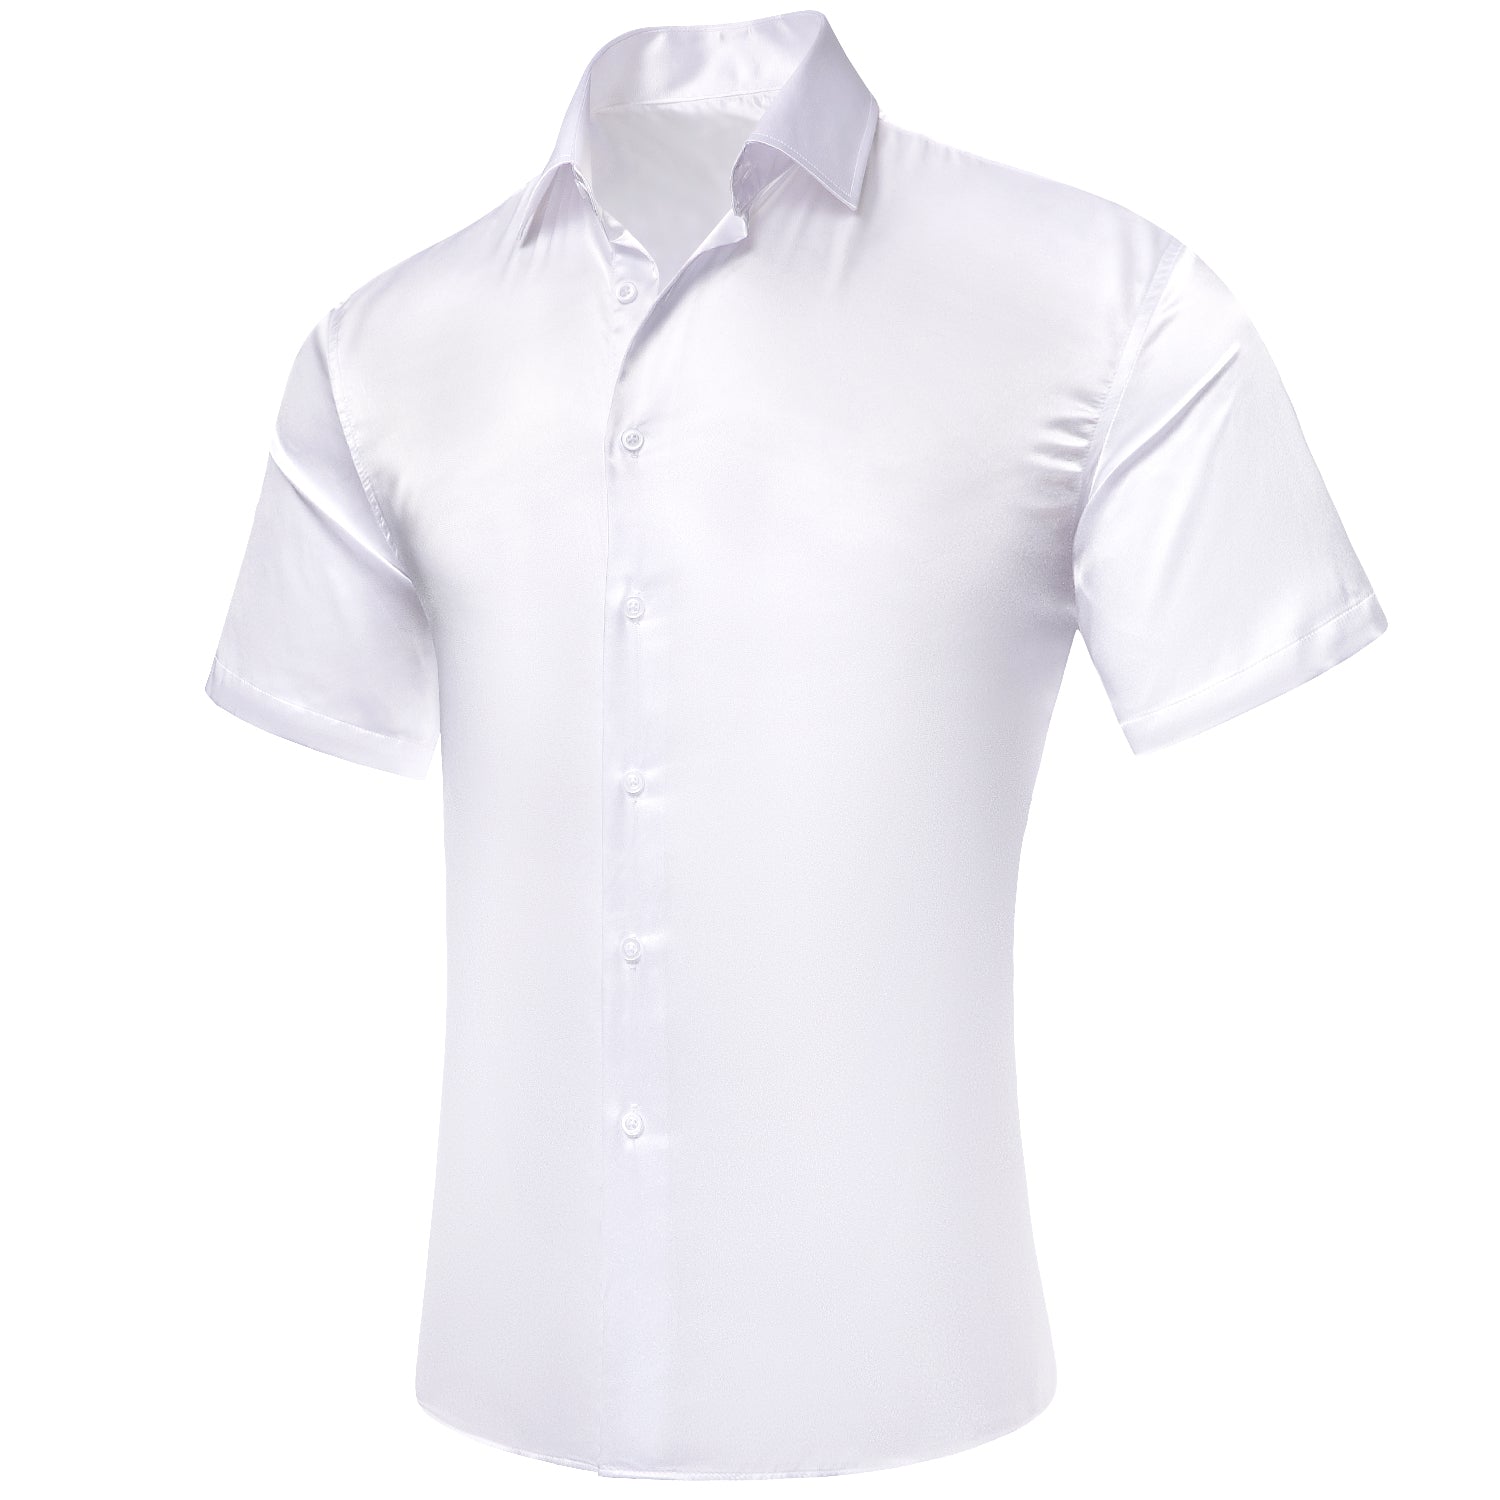 White Solid Satin Men's Short Sleeve Shirt